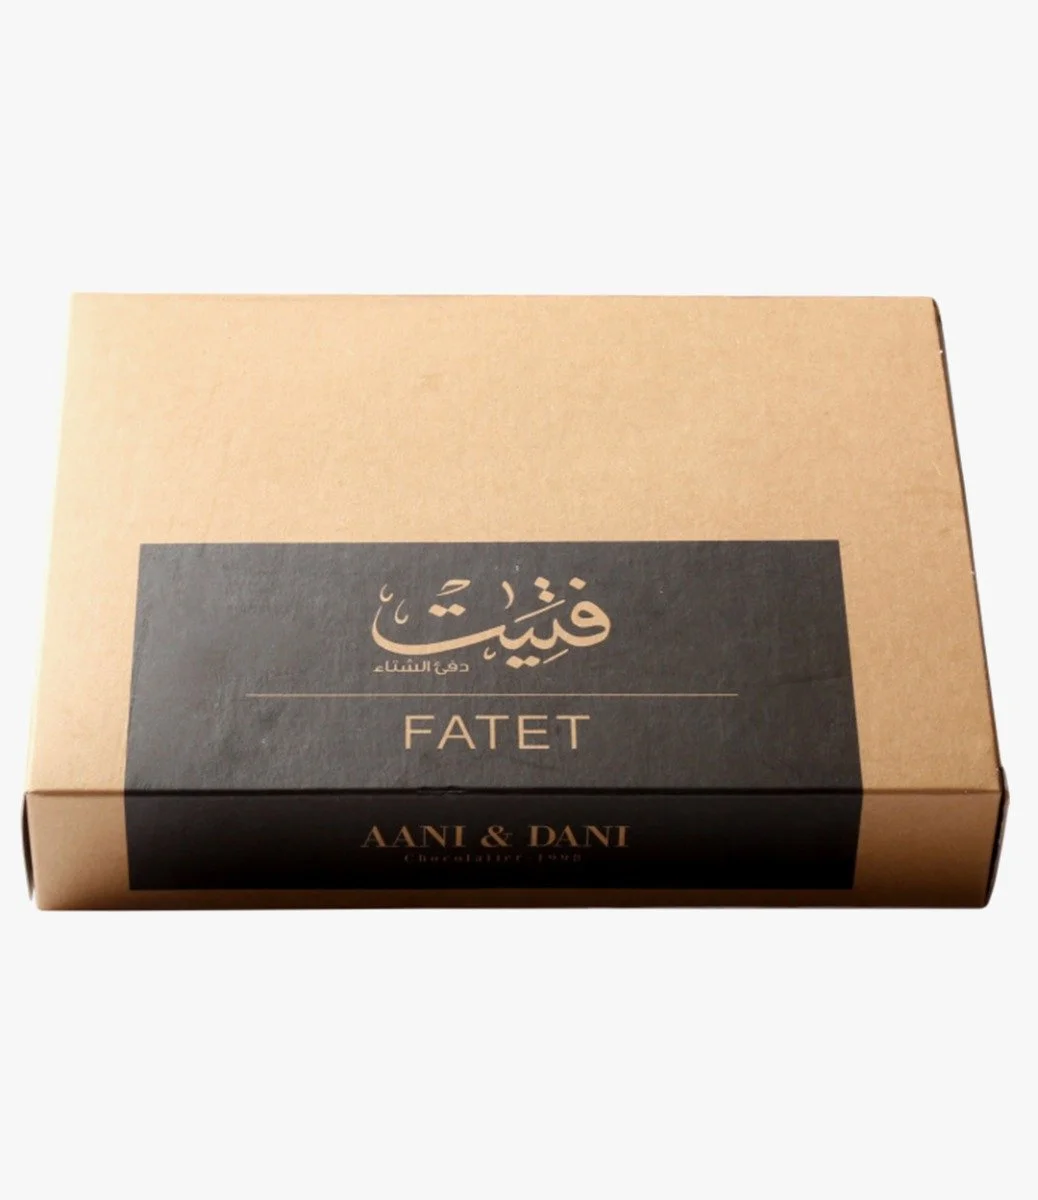 Fatet - One Kilo by Aani & Dani 